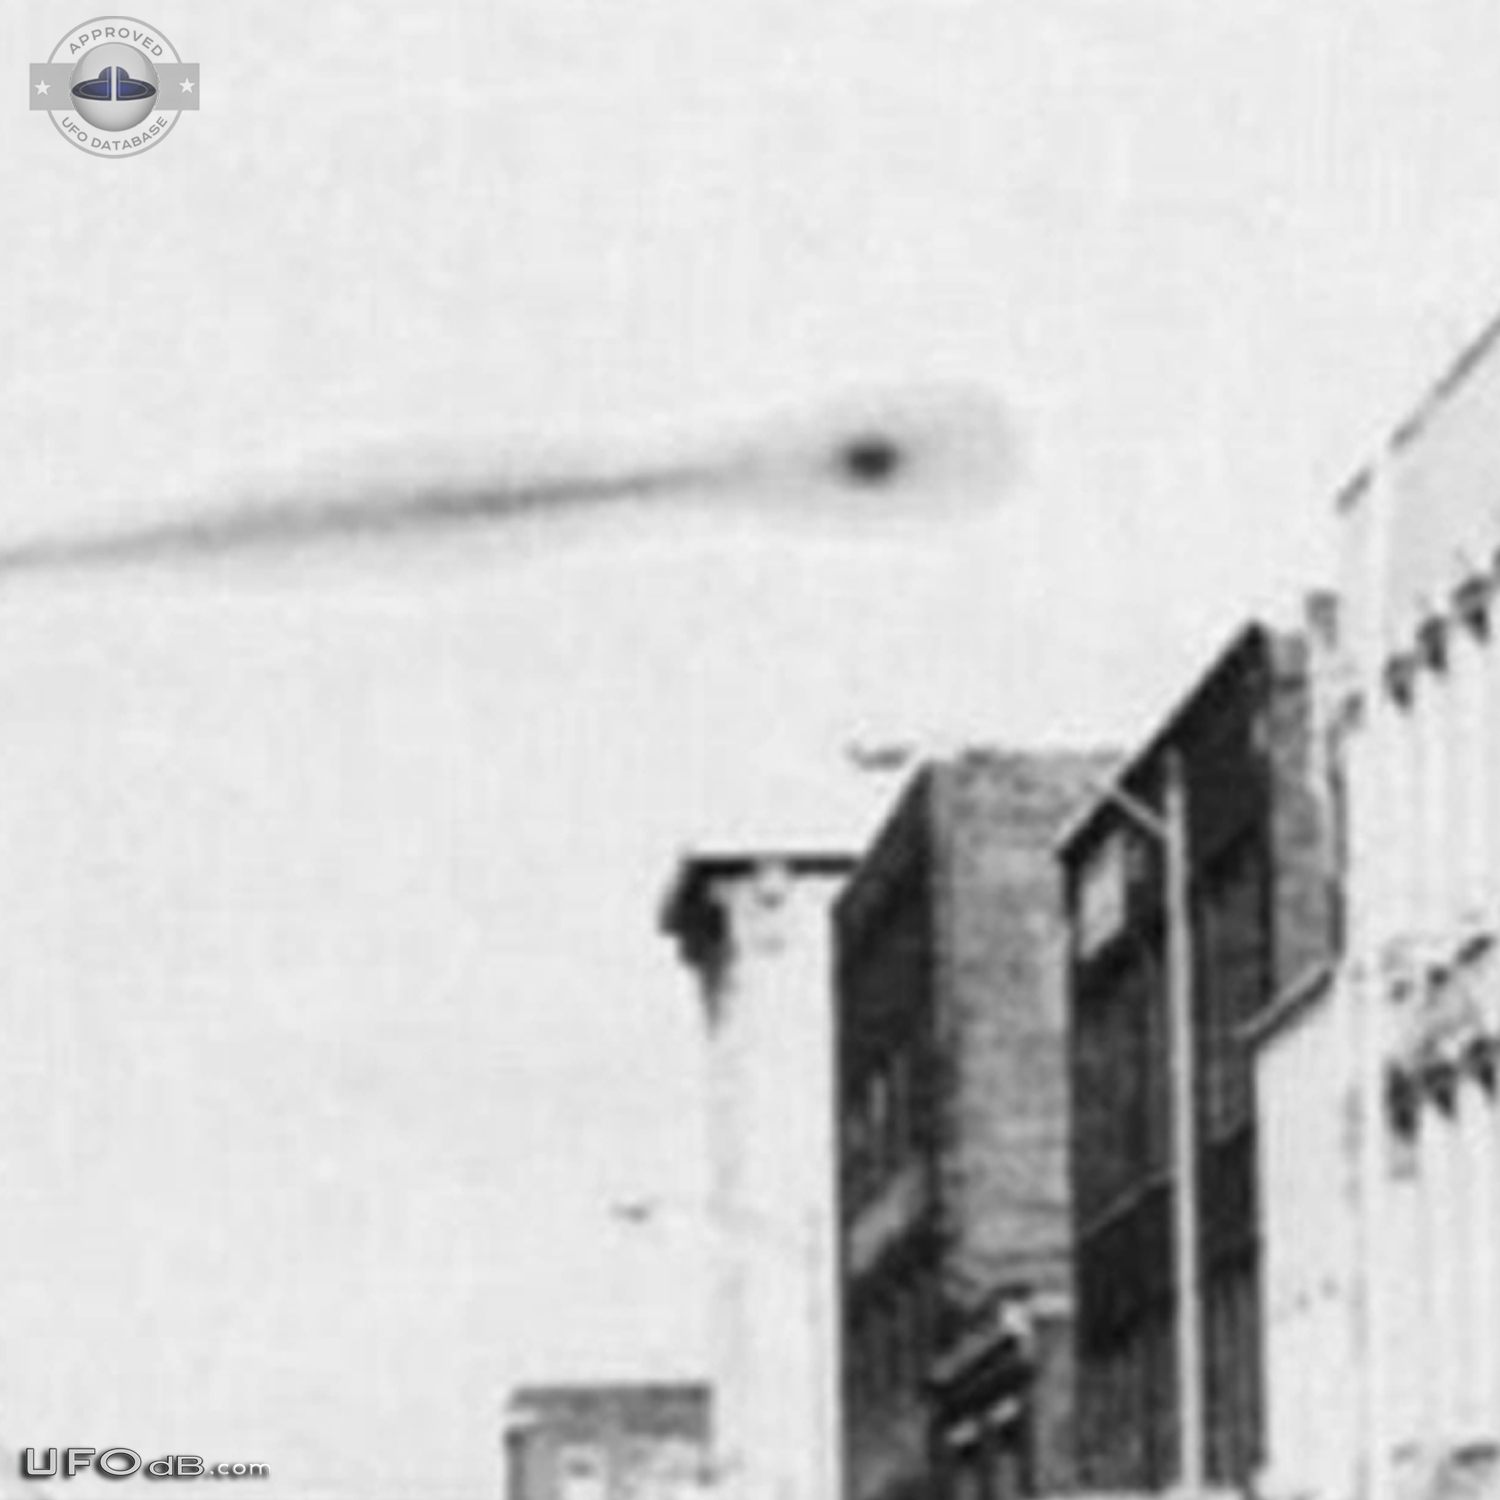 CIA Declassified UFO picture of 1965 in Omaha, Nebraska USA UFO Picture #631-5